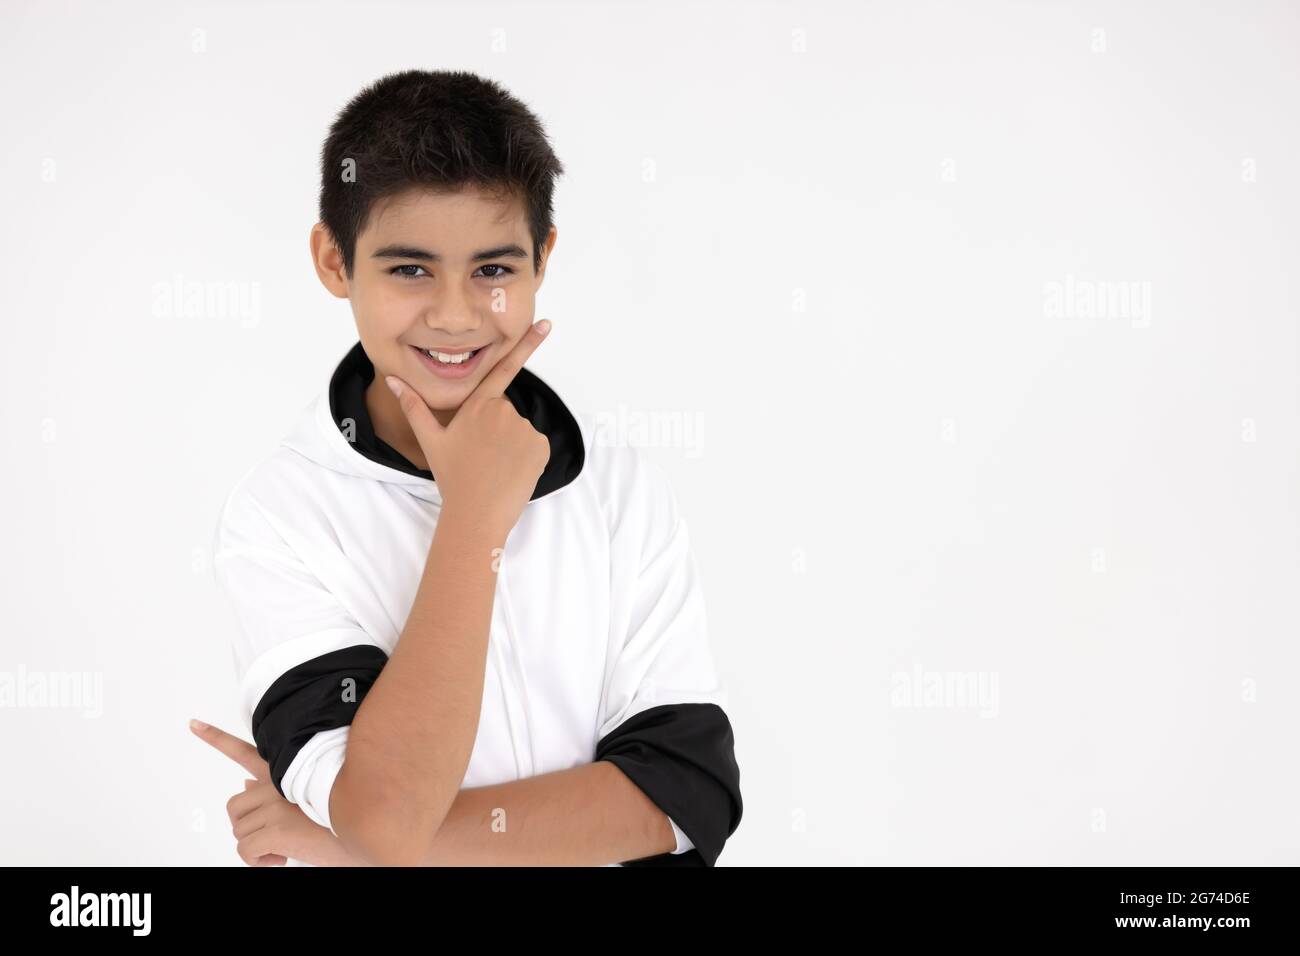 Ritratto giovane bambino intelligente asiatico sano ragazzo adolescente saluto felice sorriso divertente isolato su sfondo bianco. Foto Stock